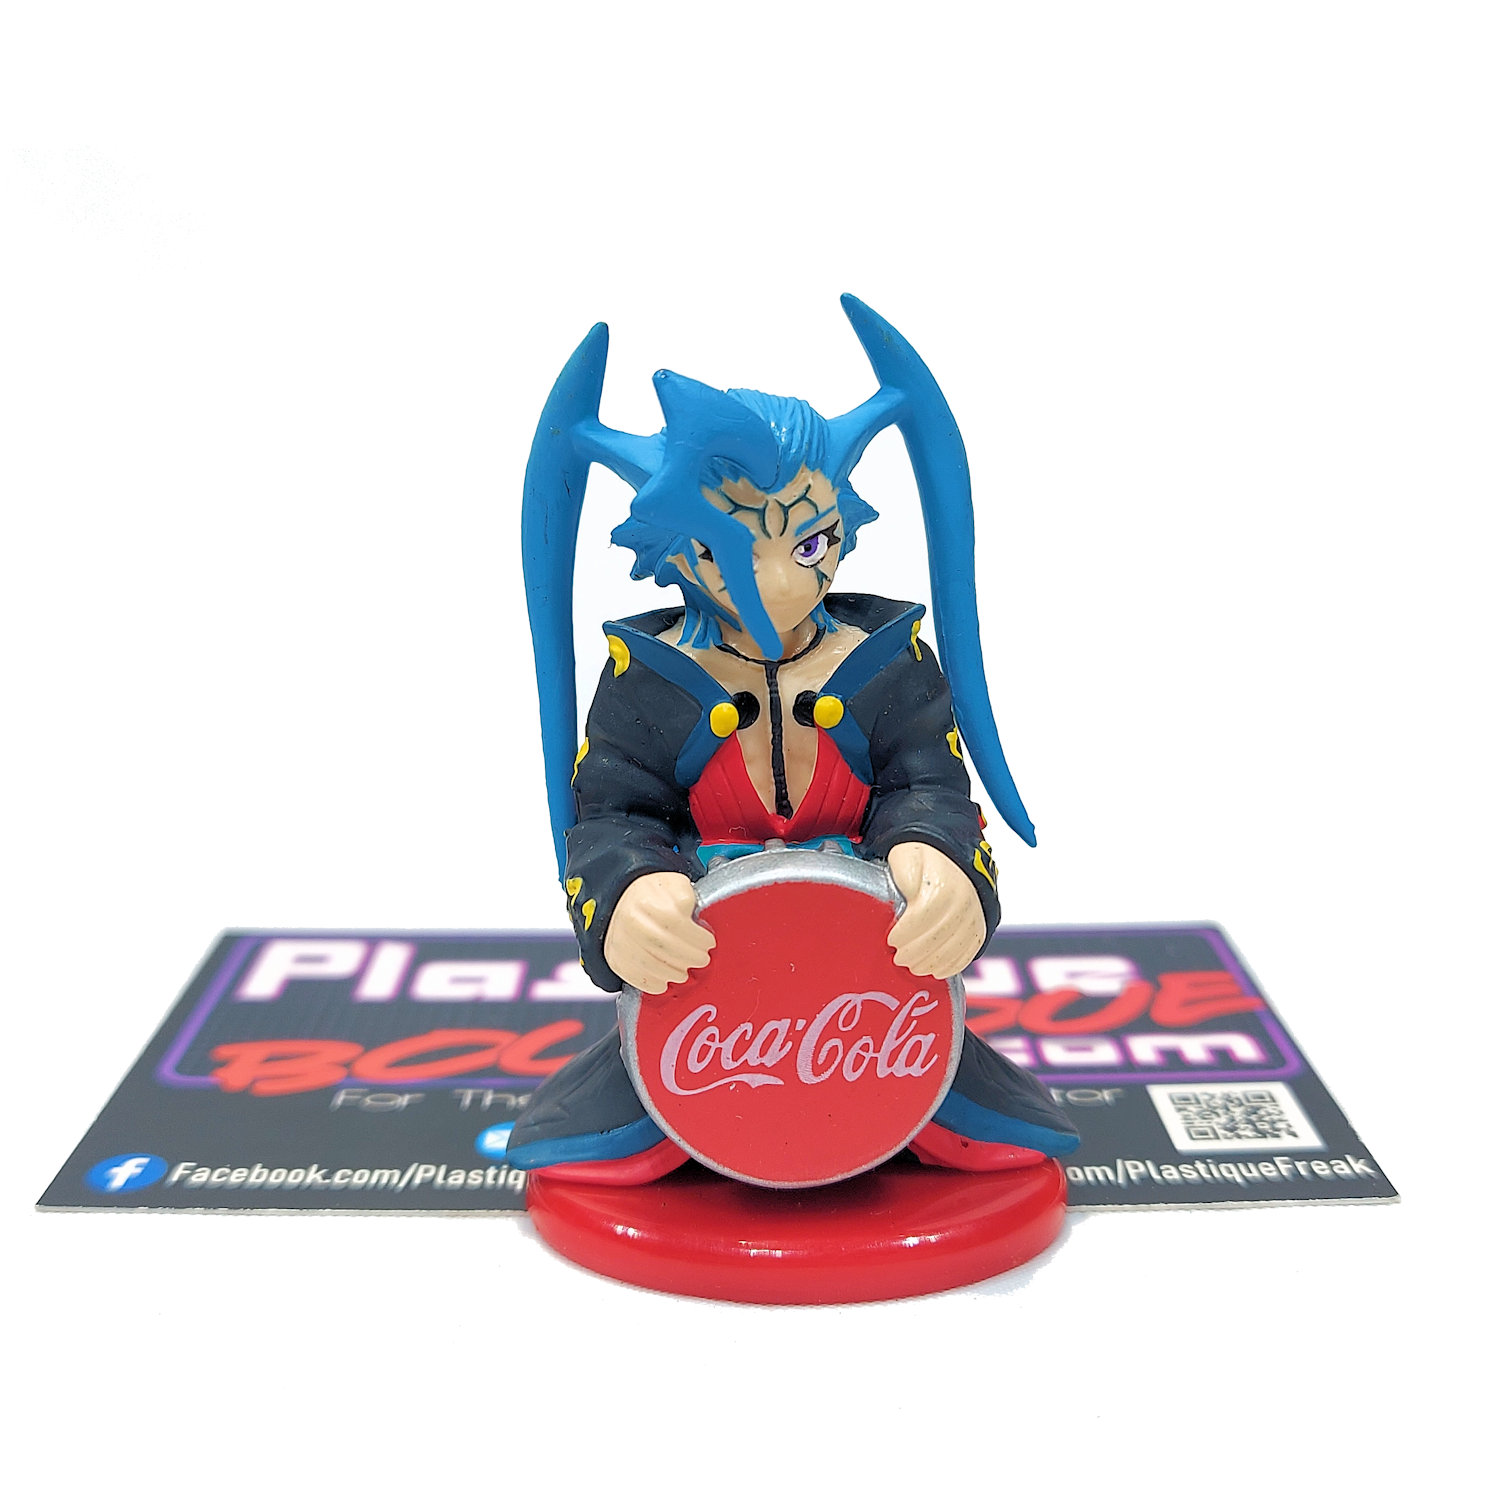 Coca-Cola Final Fantasy X Volume 3: Seymour Guado Mini Figure